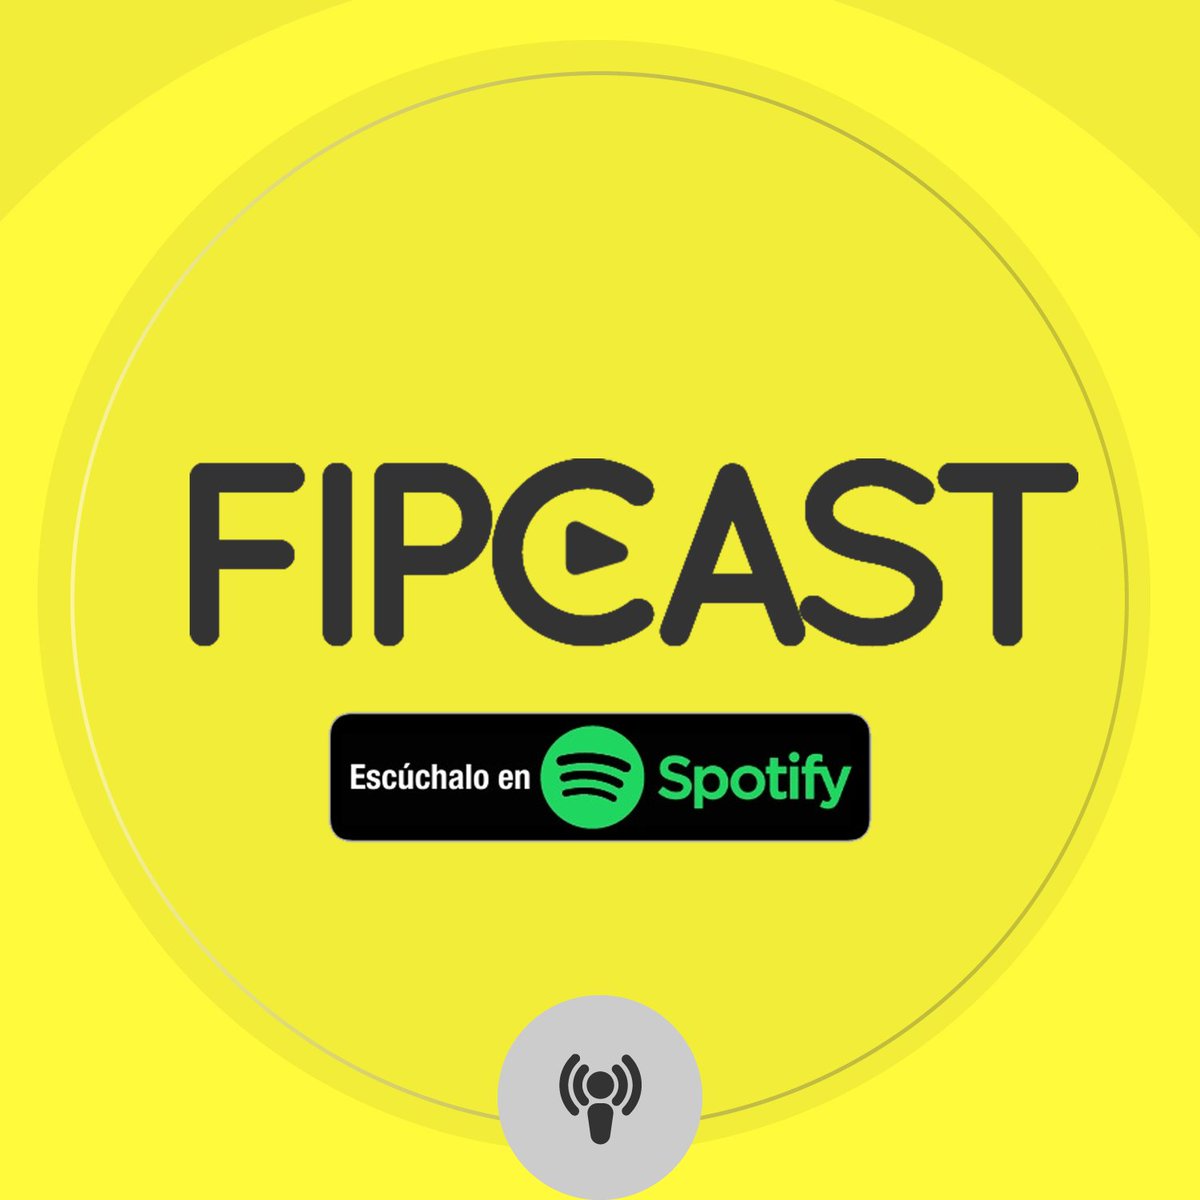 #FIPcast| ¡Nos estrenamos en Spotify! Suscríbete al canal y escucha nuestros análisis en voces de los investigadores y diversos invitados. 

🎙️ Síguenos en spoti.fi/2MzcelA

¿Qué temas te gustaría que habláramos? Cuéntanos en los comentarios 👇🏽